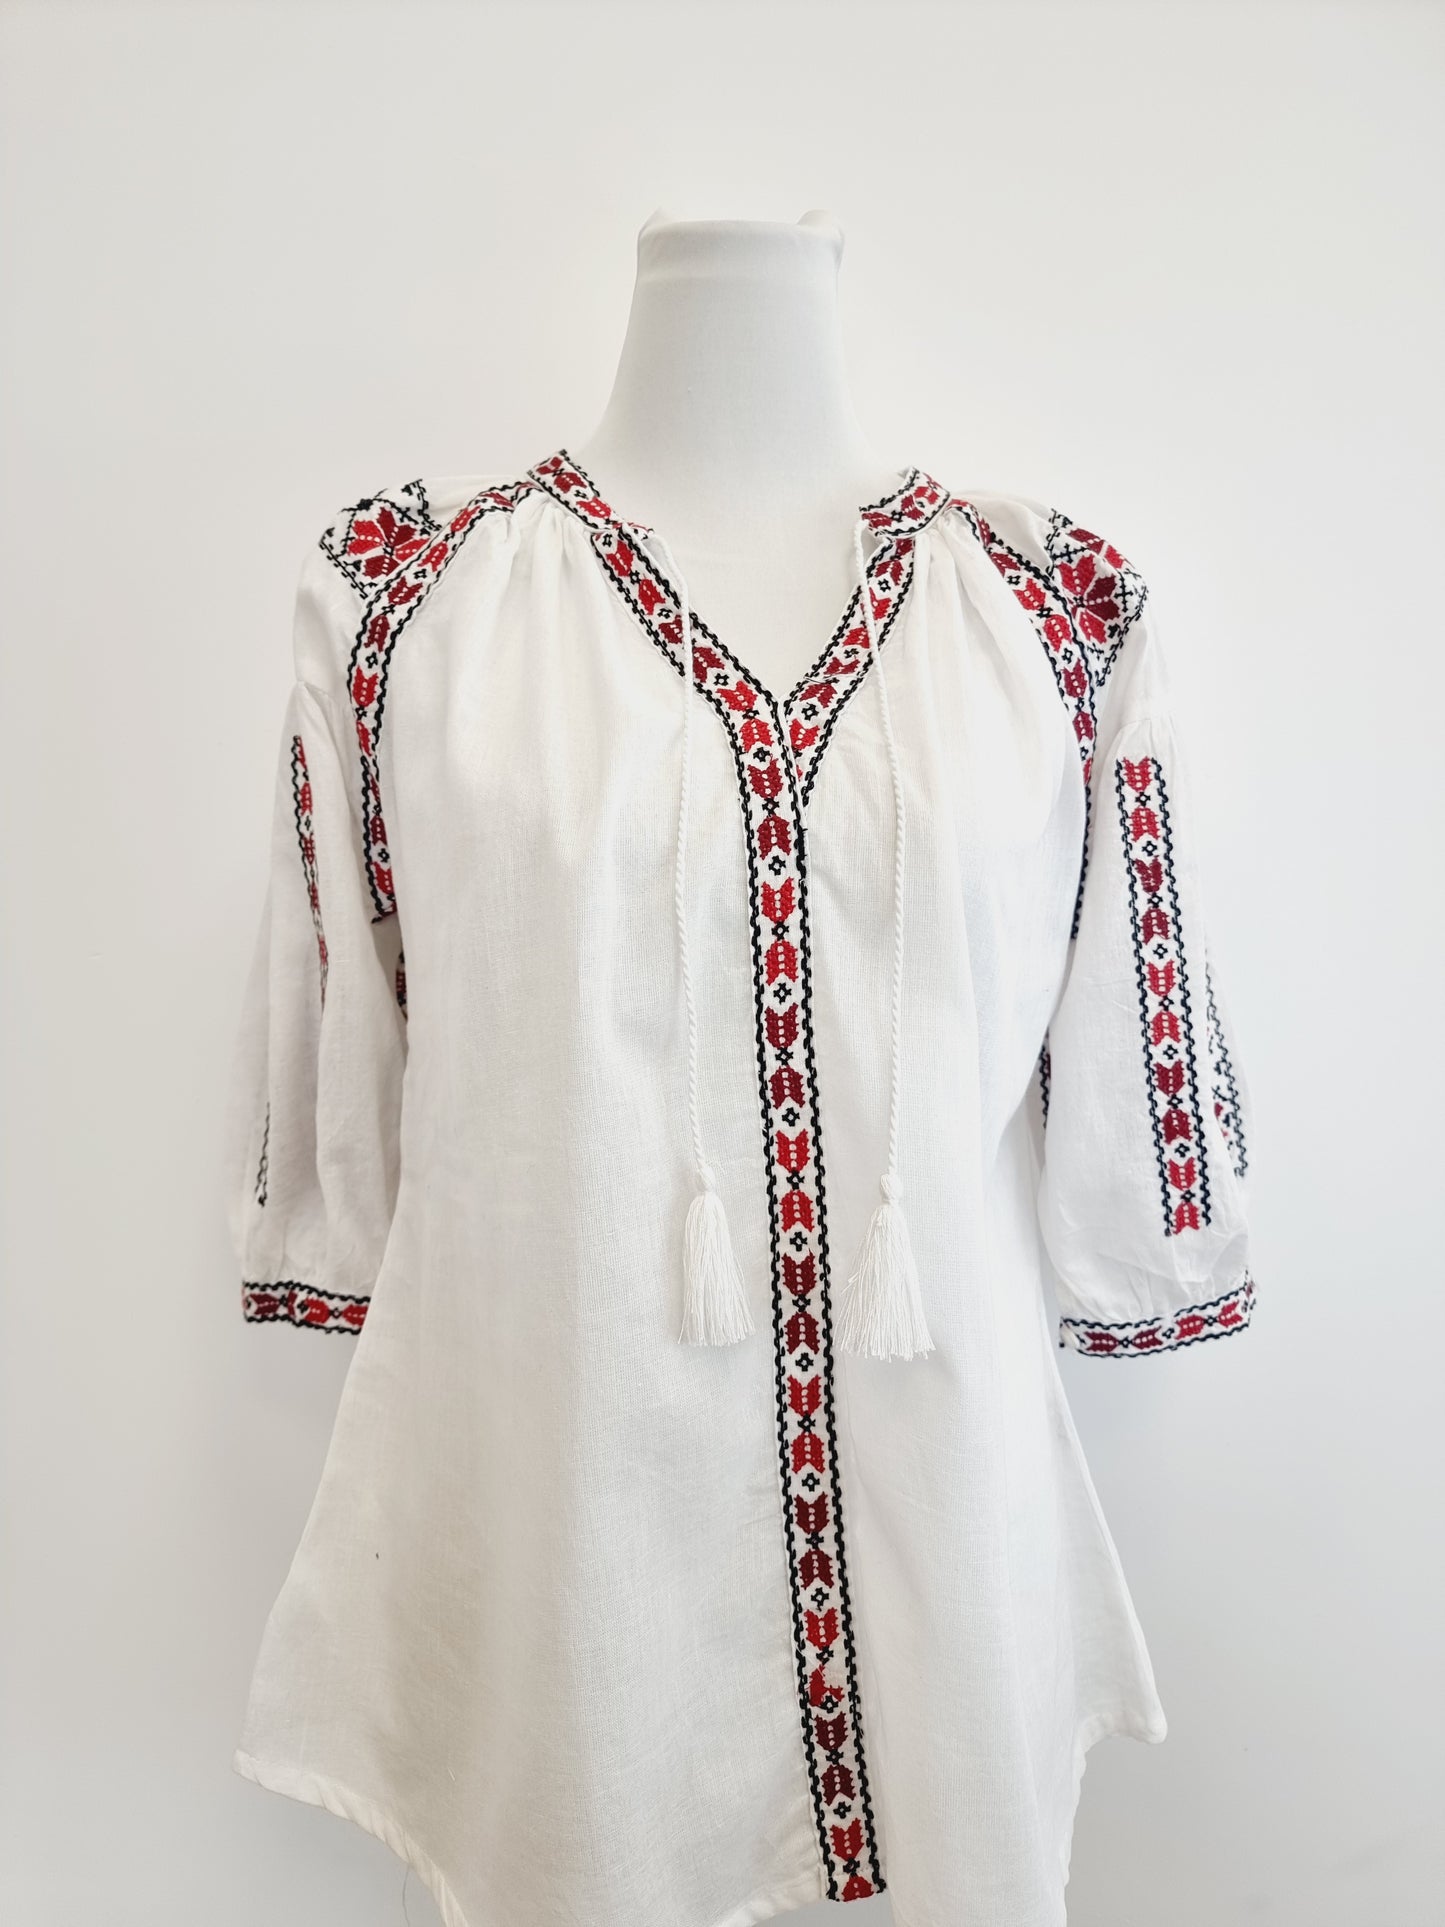 Belle blouse folklorique roumain brodé à la main pour femme  